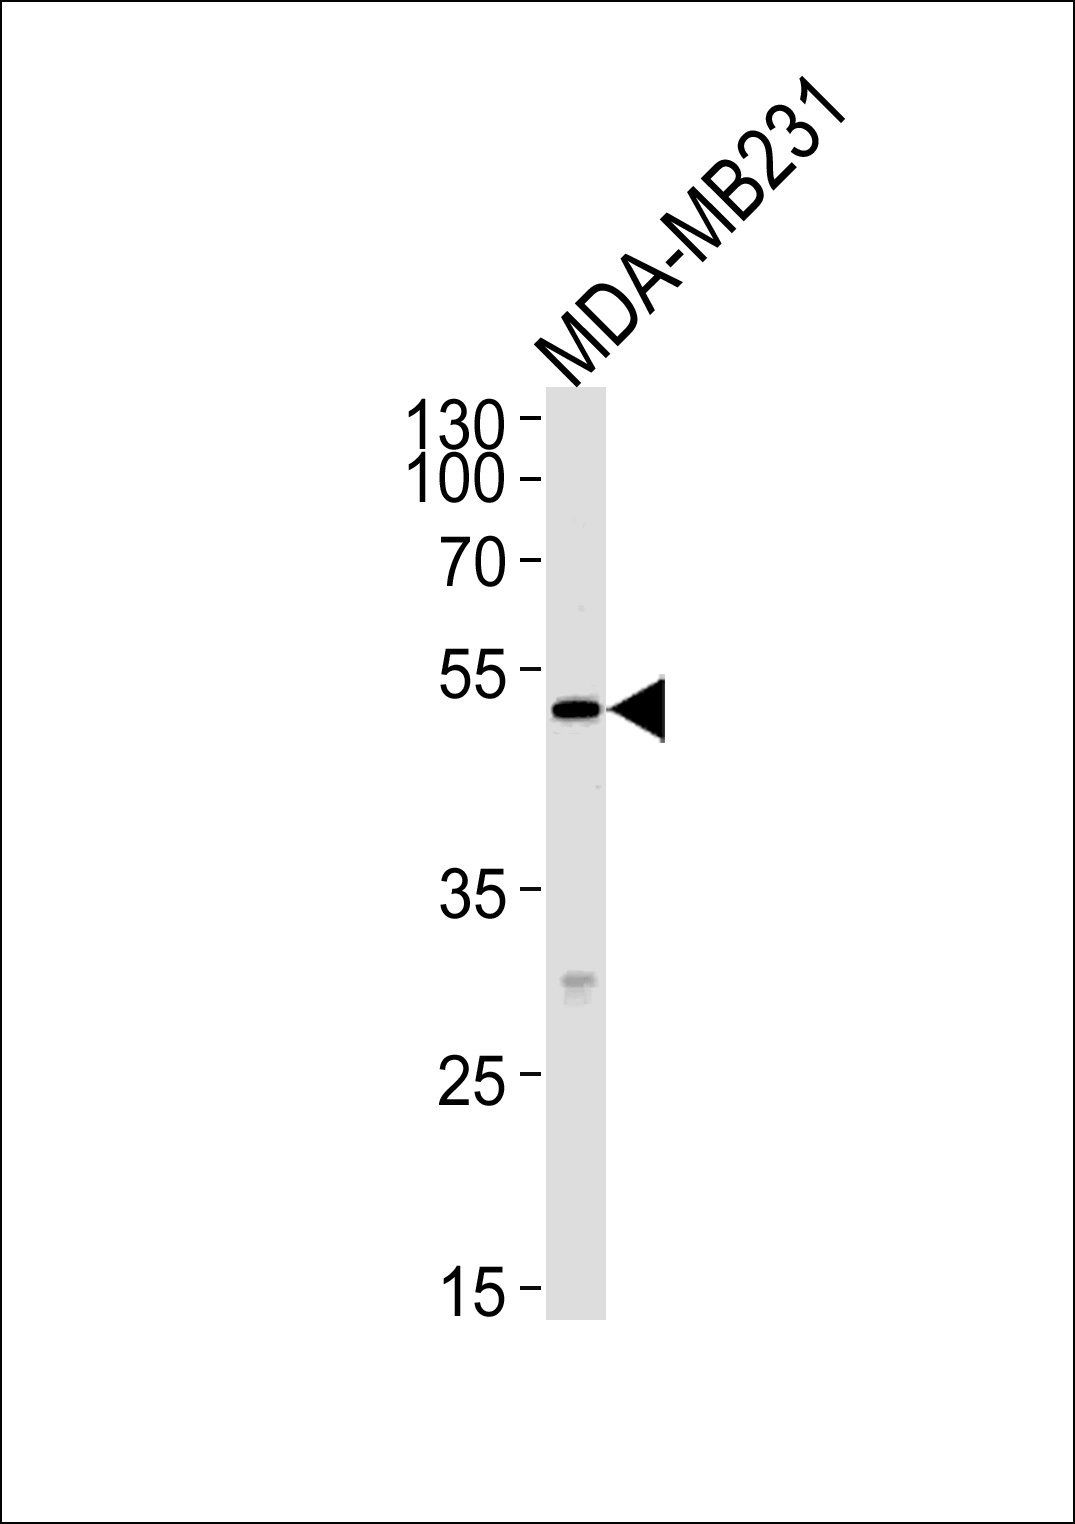 MICA antibody